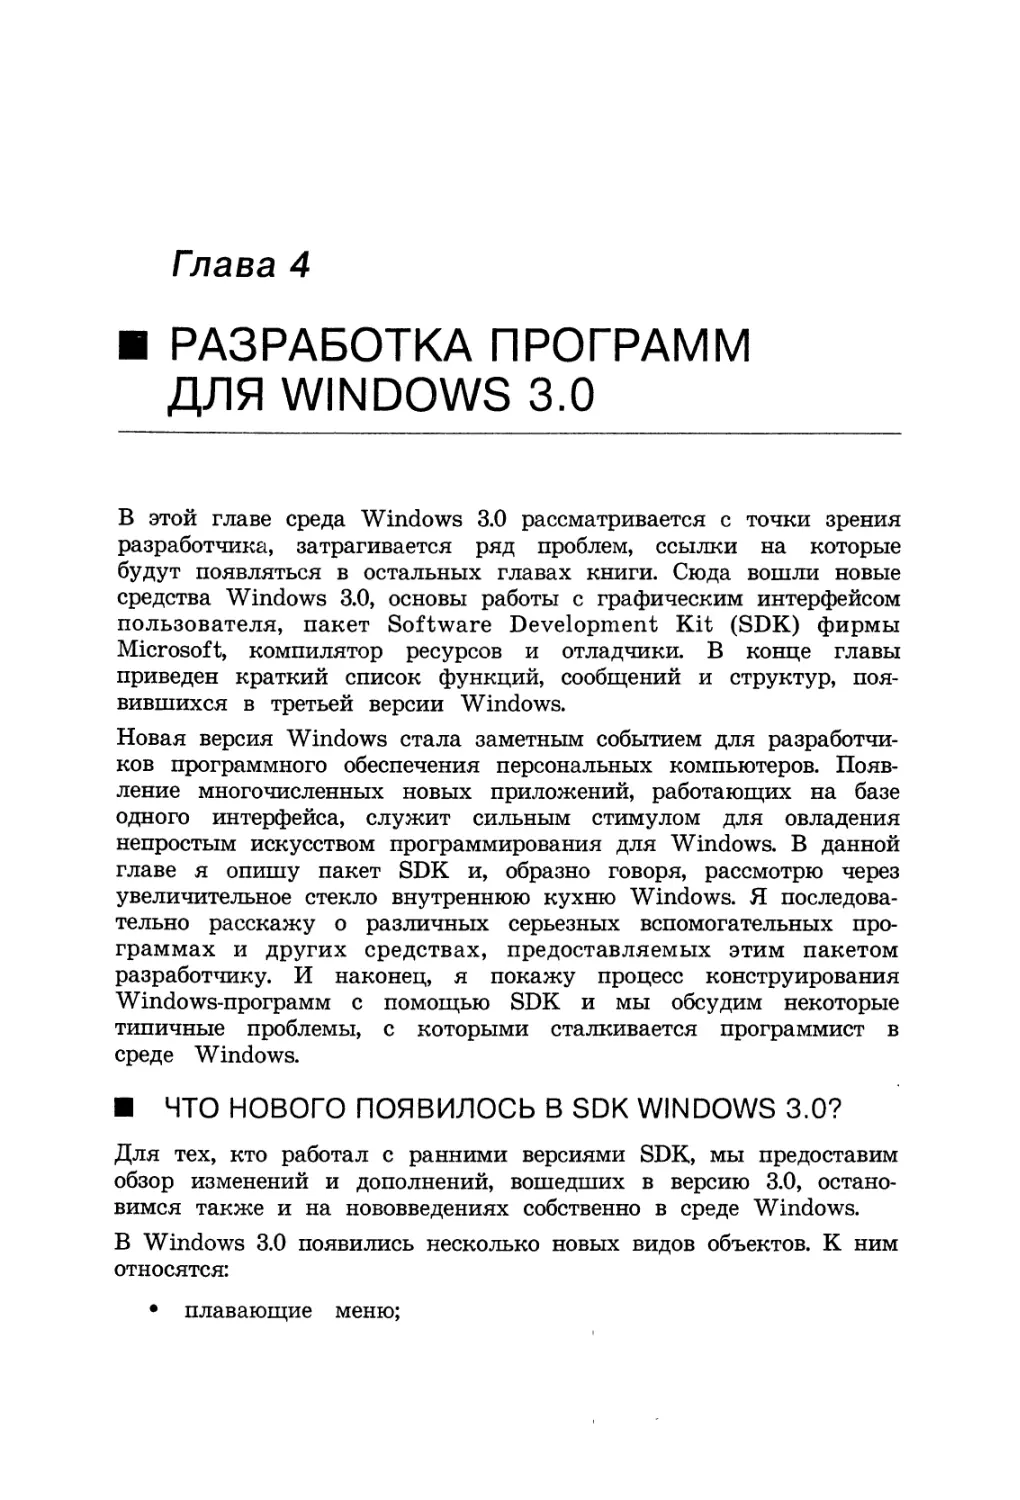 Глава 4. Разработка программ для Windows 3.0
Что нового появилось в SDK Windows 3.0